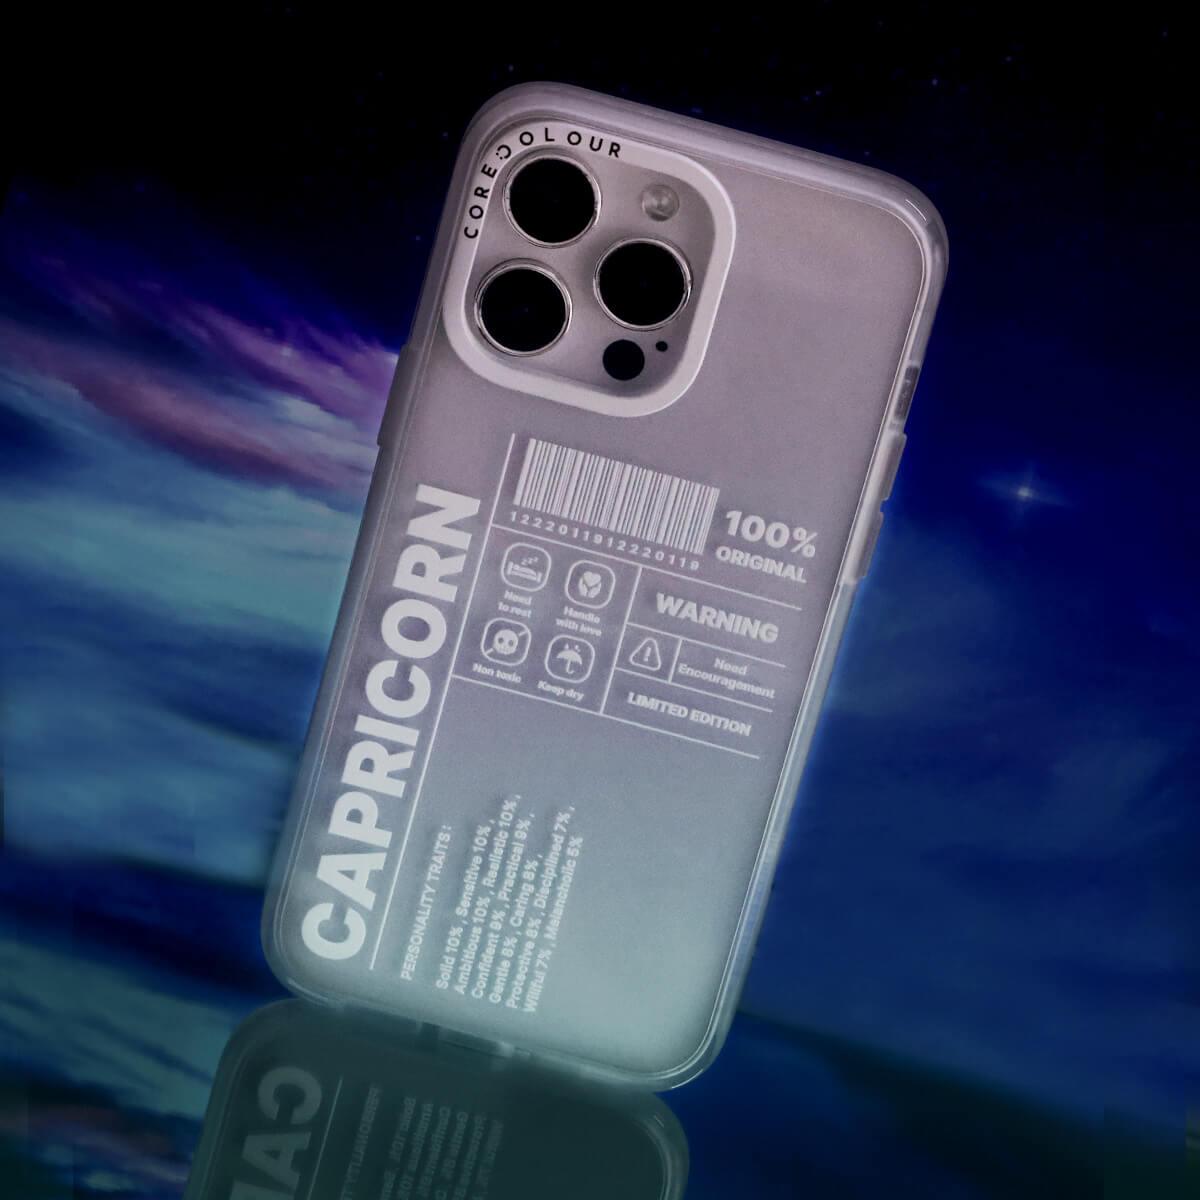 iPhone 13 Pro Max Warning Capricorn Phone Case - CORECOLOUR AU